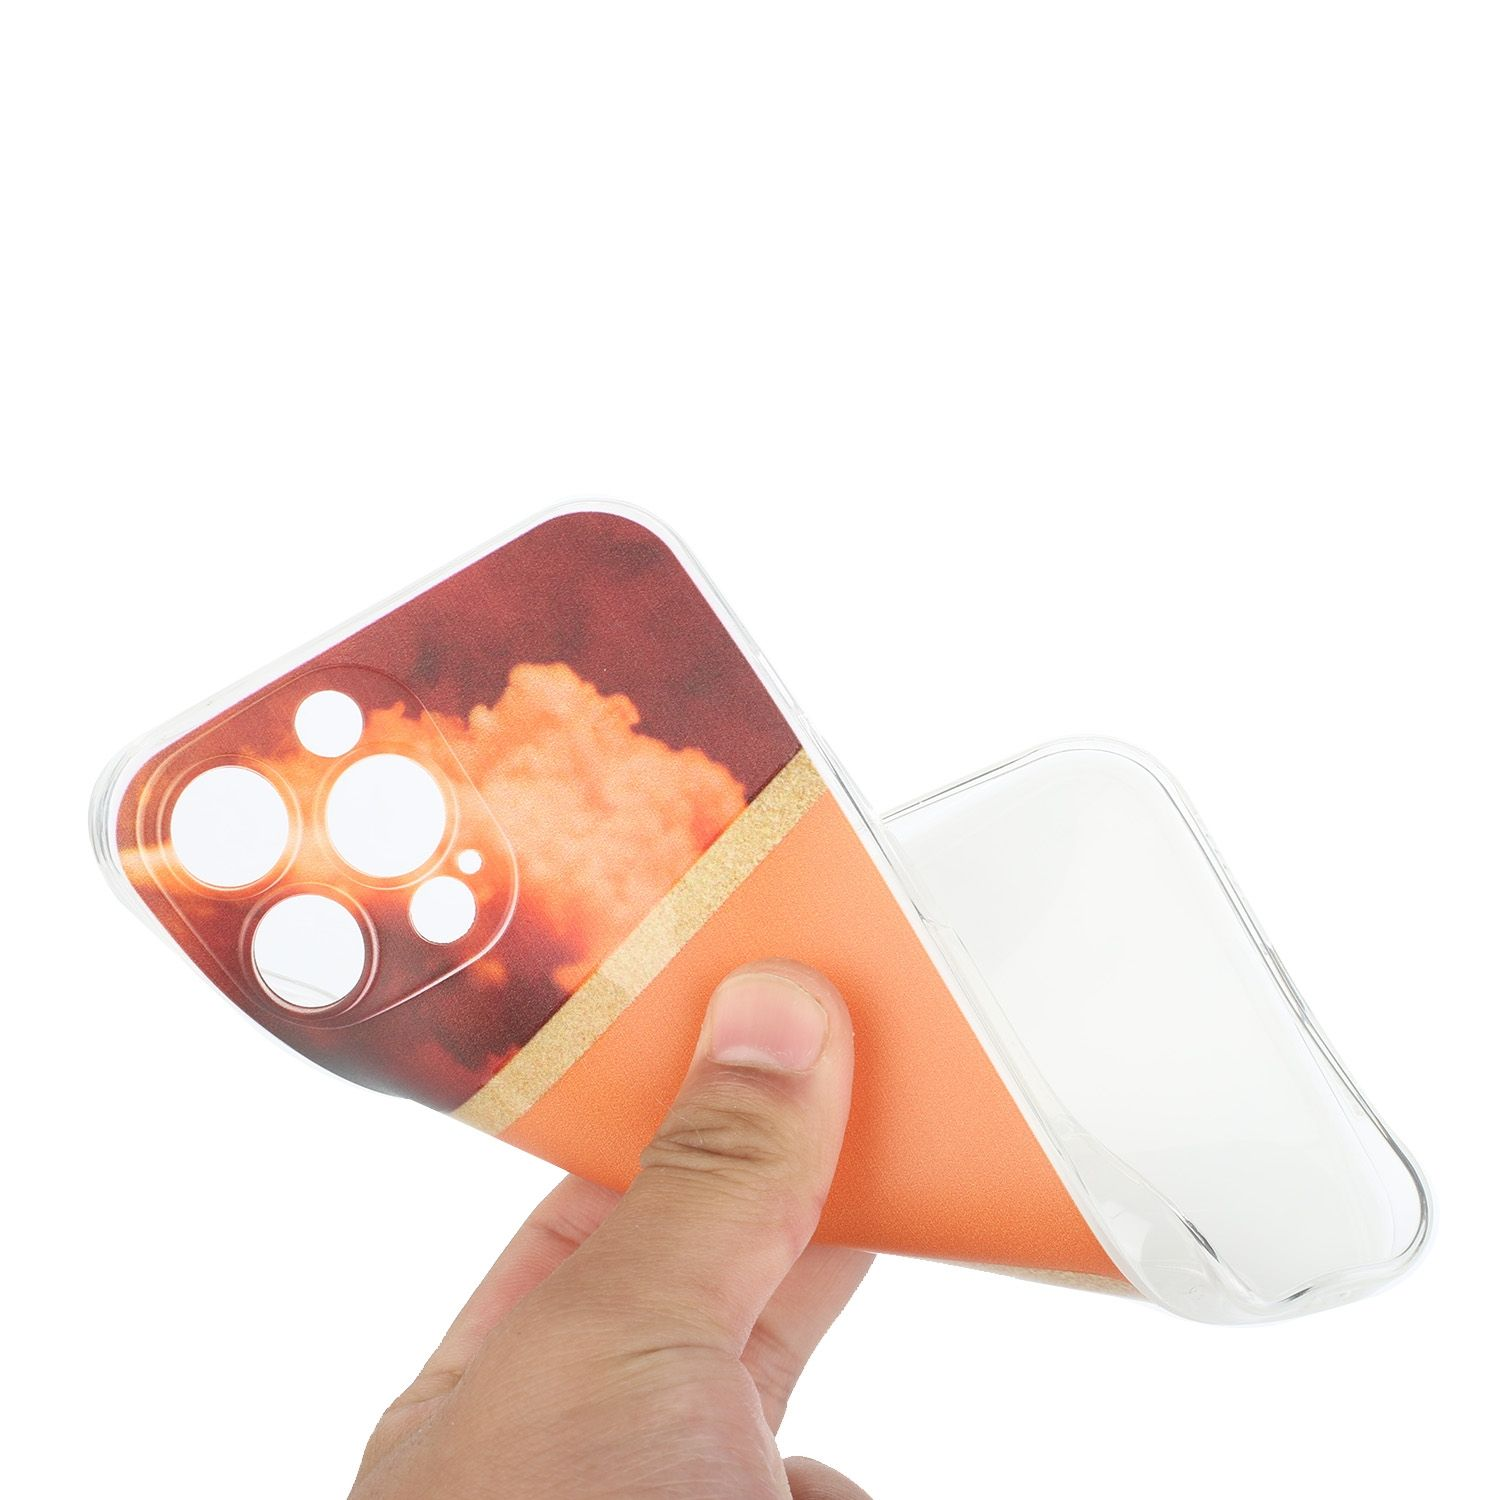 DESIGN Orange Pro, Backcover, 12 Case, iPhone KÖNIG Apple,